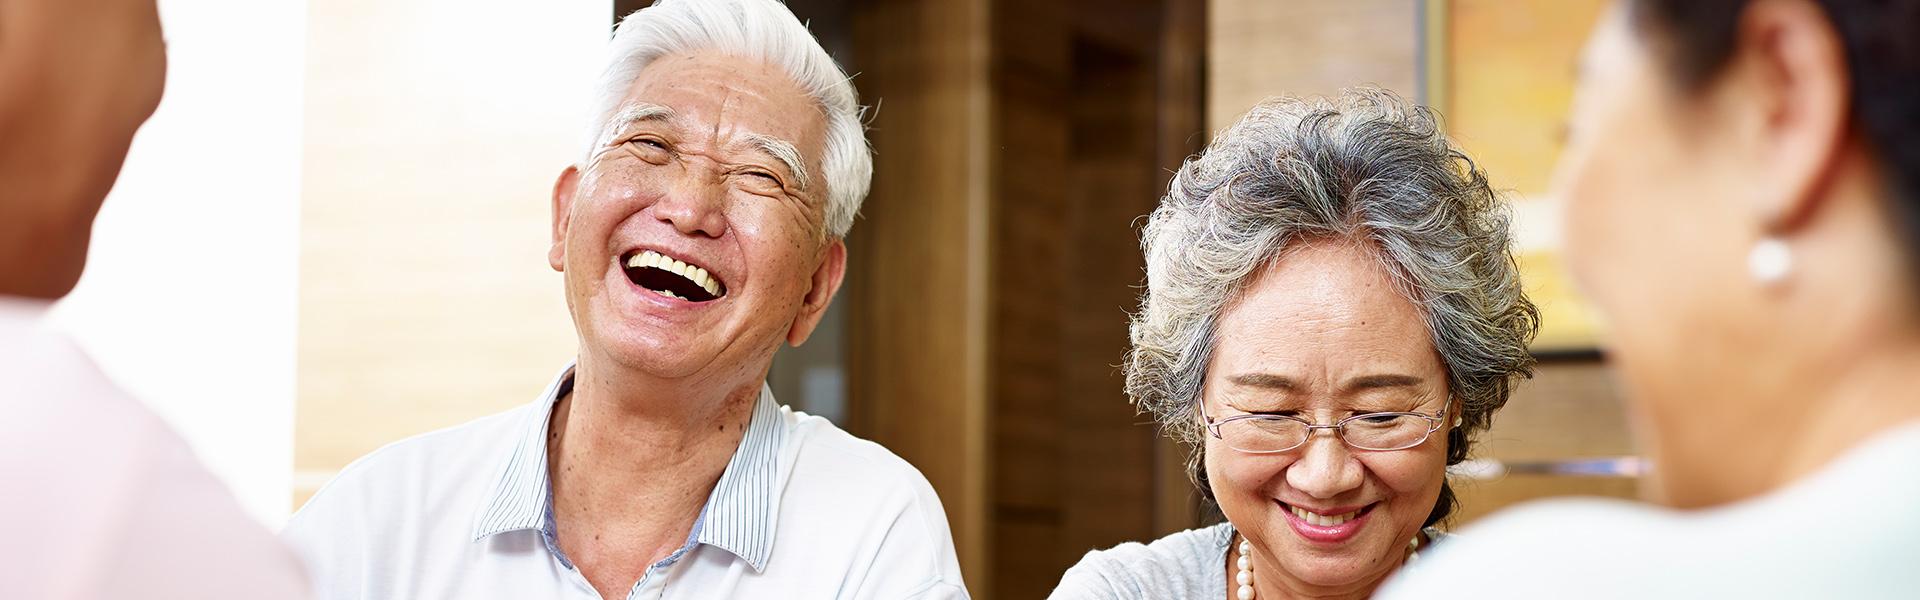 Elderly couple enjoying life